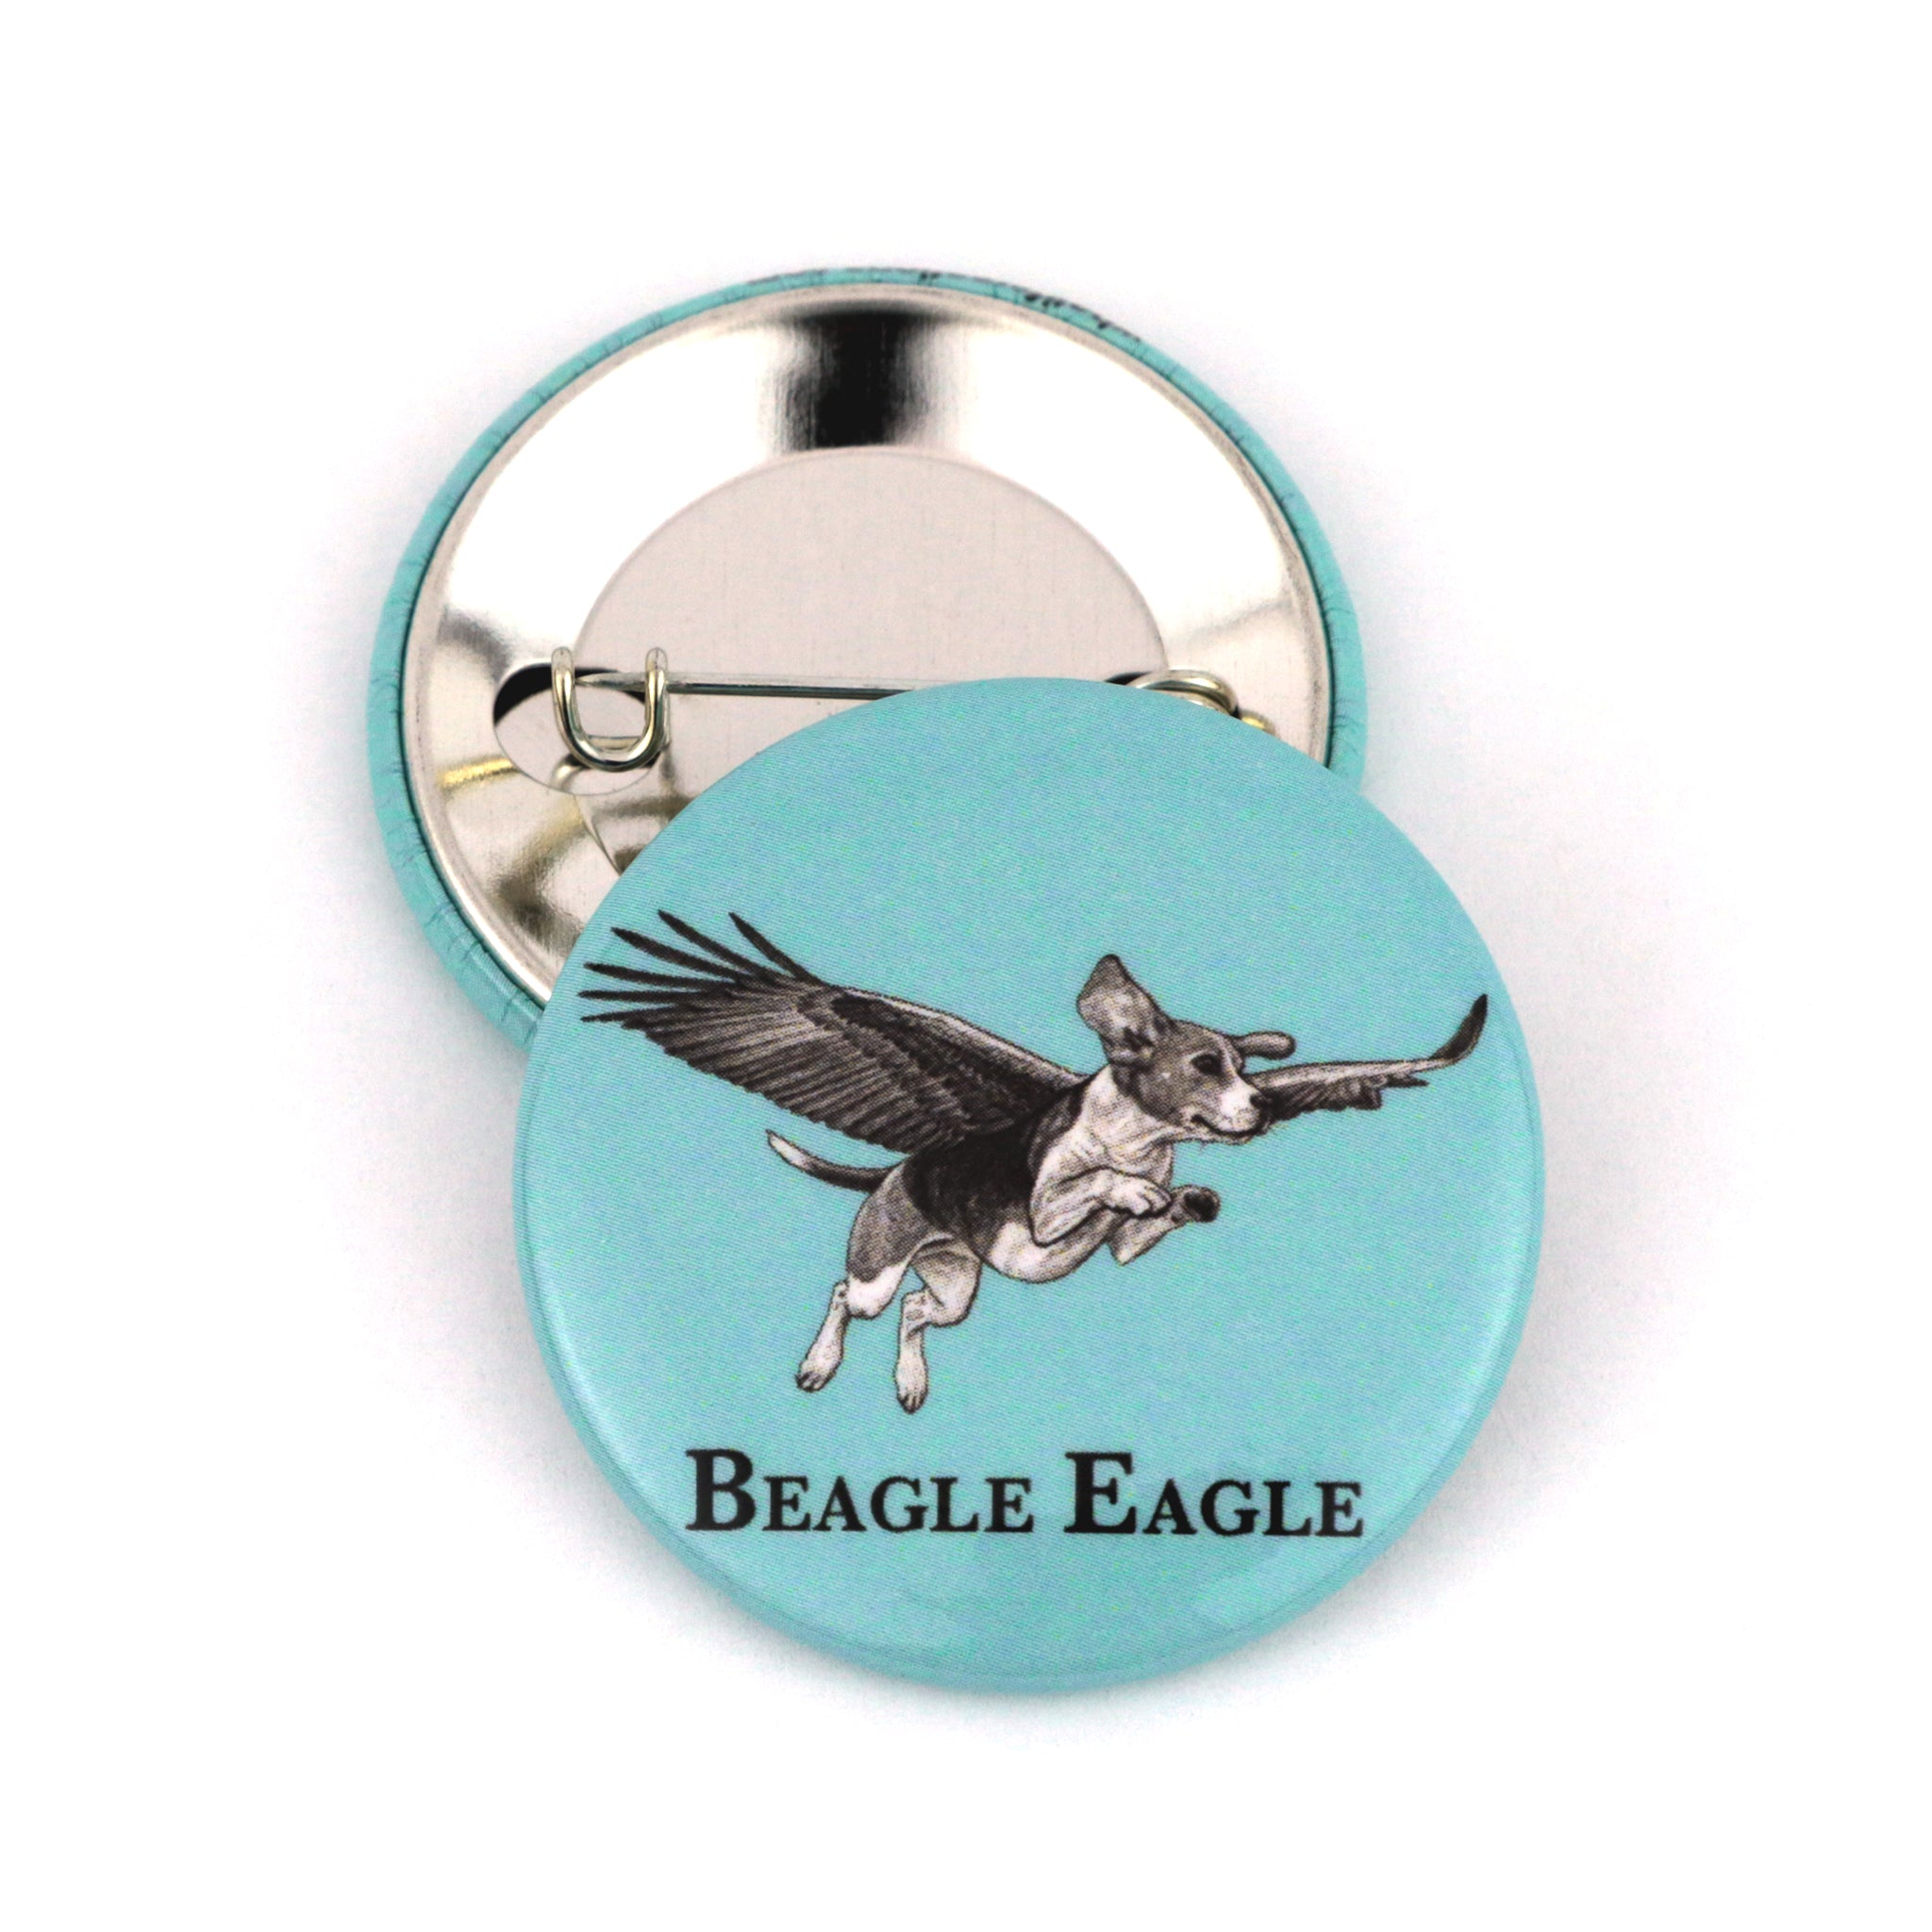 Beagle Eagle | Beagle + Eagle Hybrid Animal | 1.5" Pinback Button